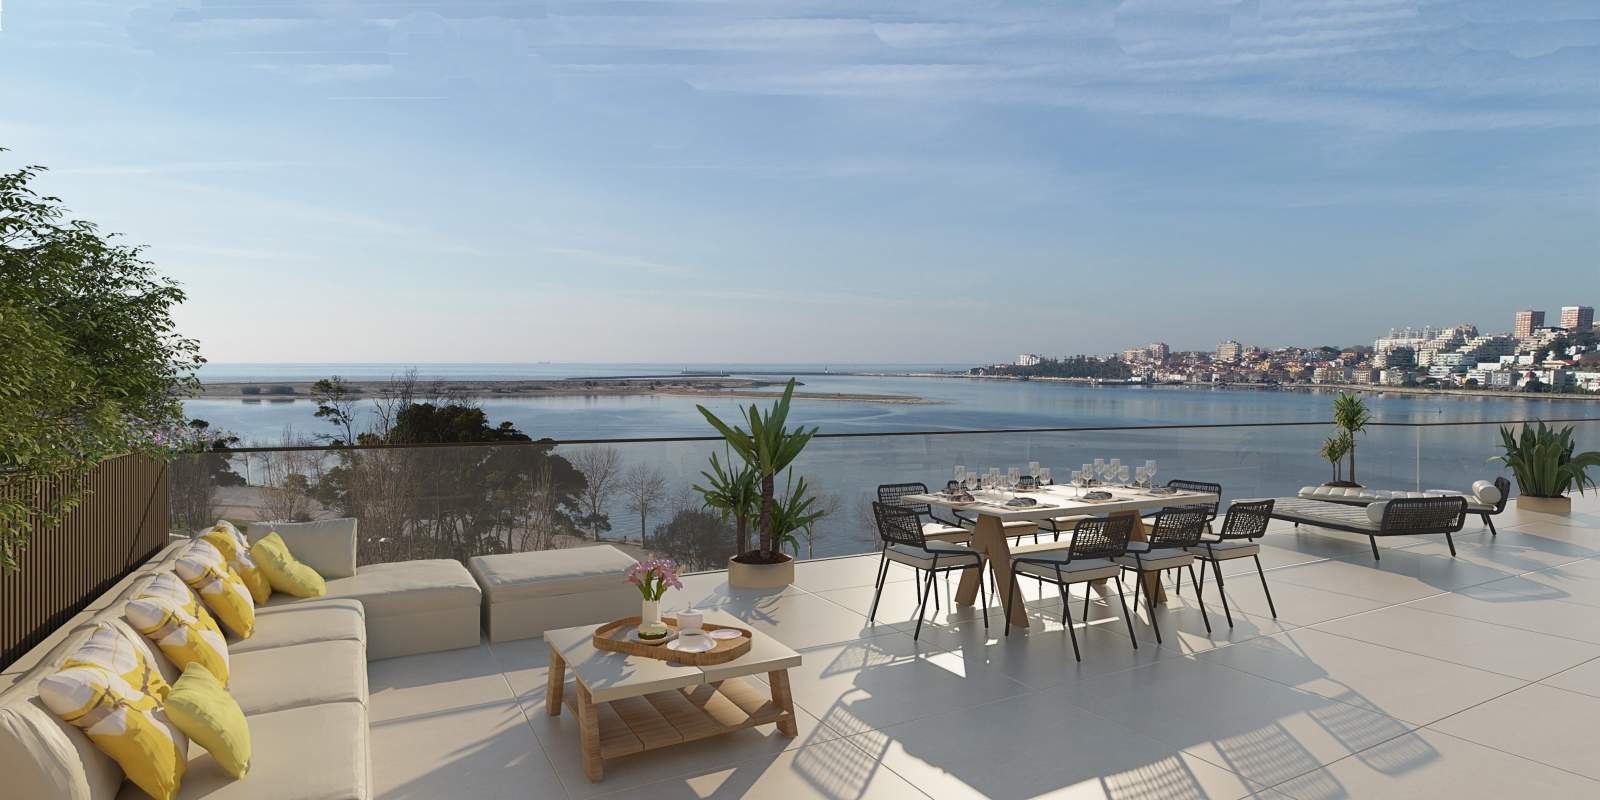 Wohnung zu verkaufen mit Terrasse, in exklusiver Wohnanlage, V. N. Gaia, Porto, Portugal_176126